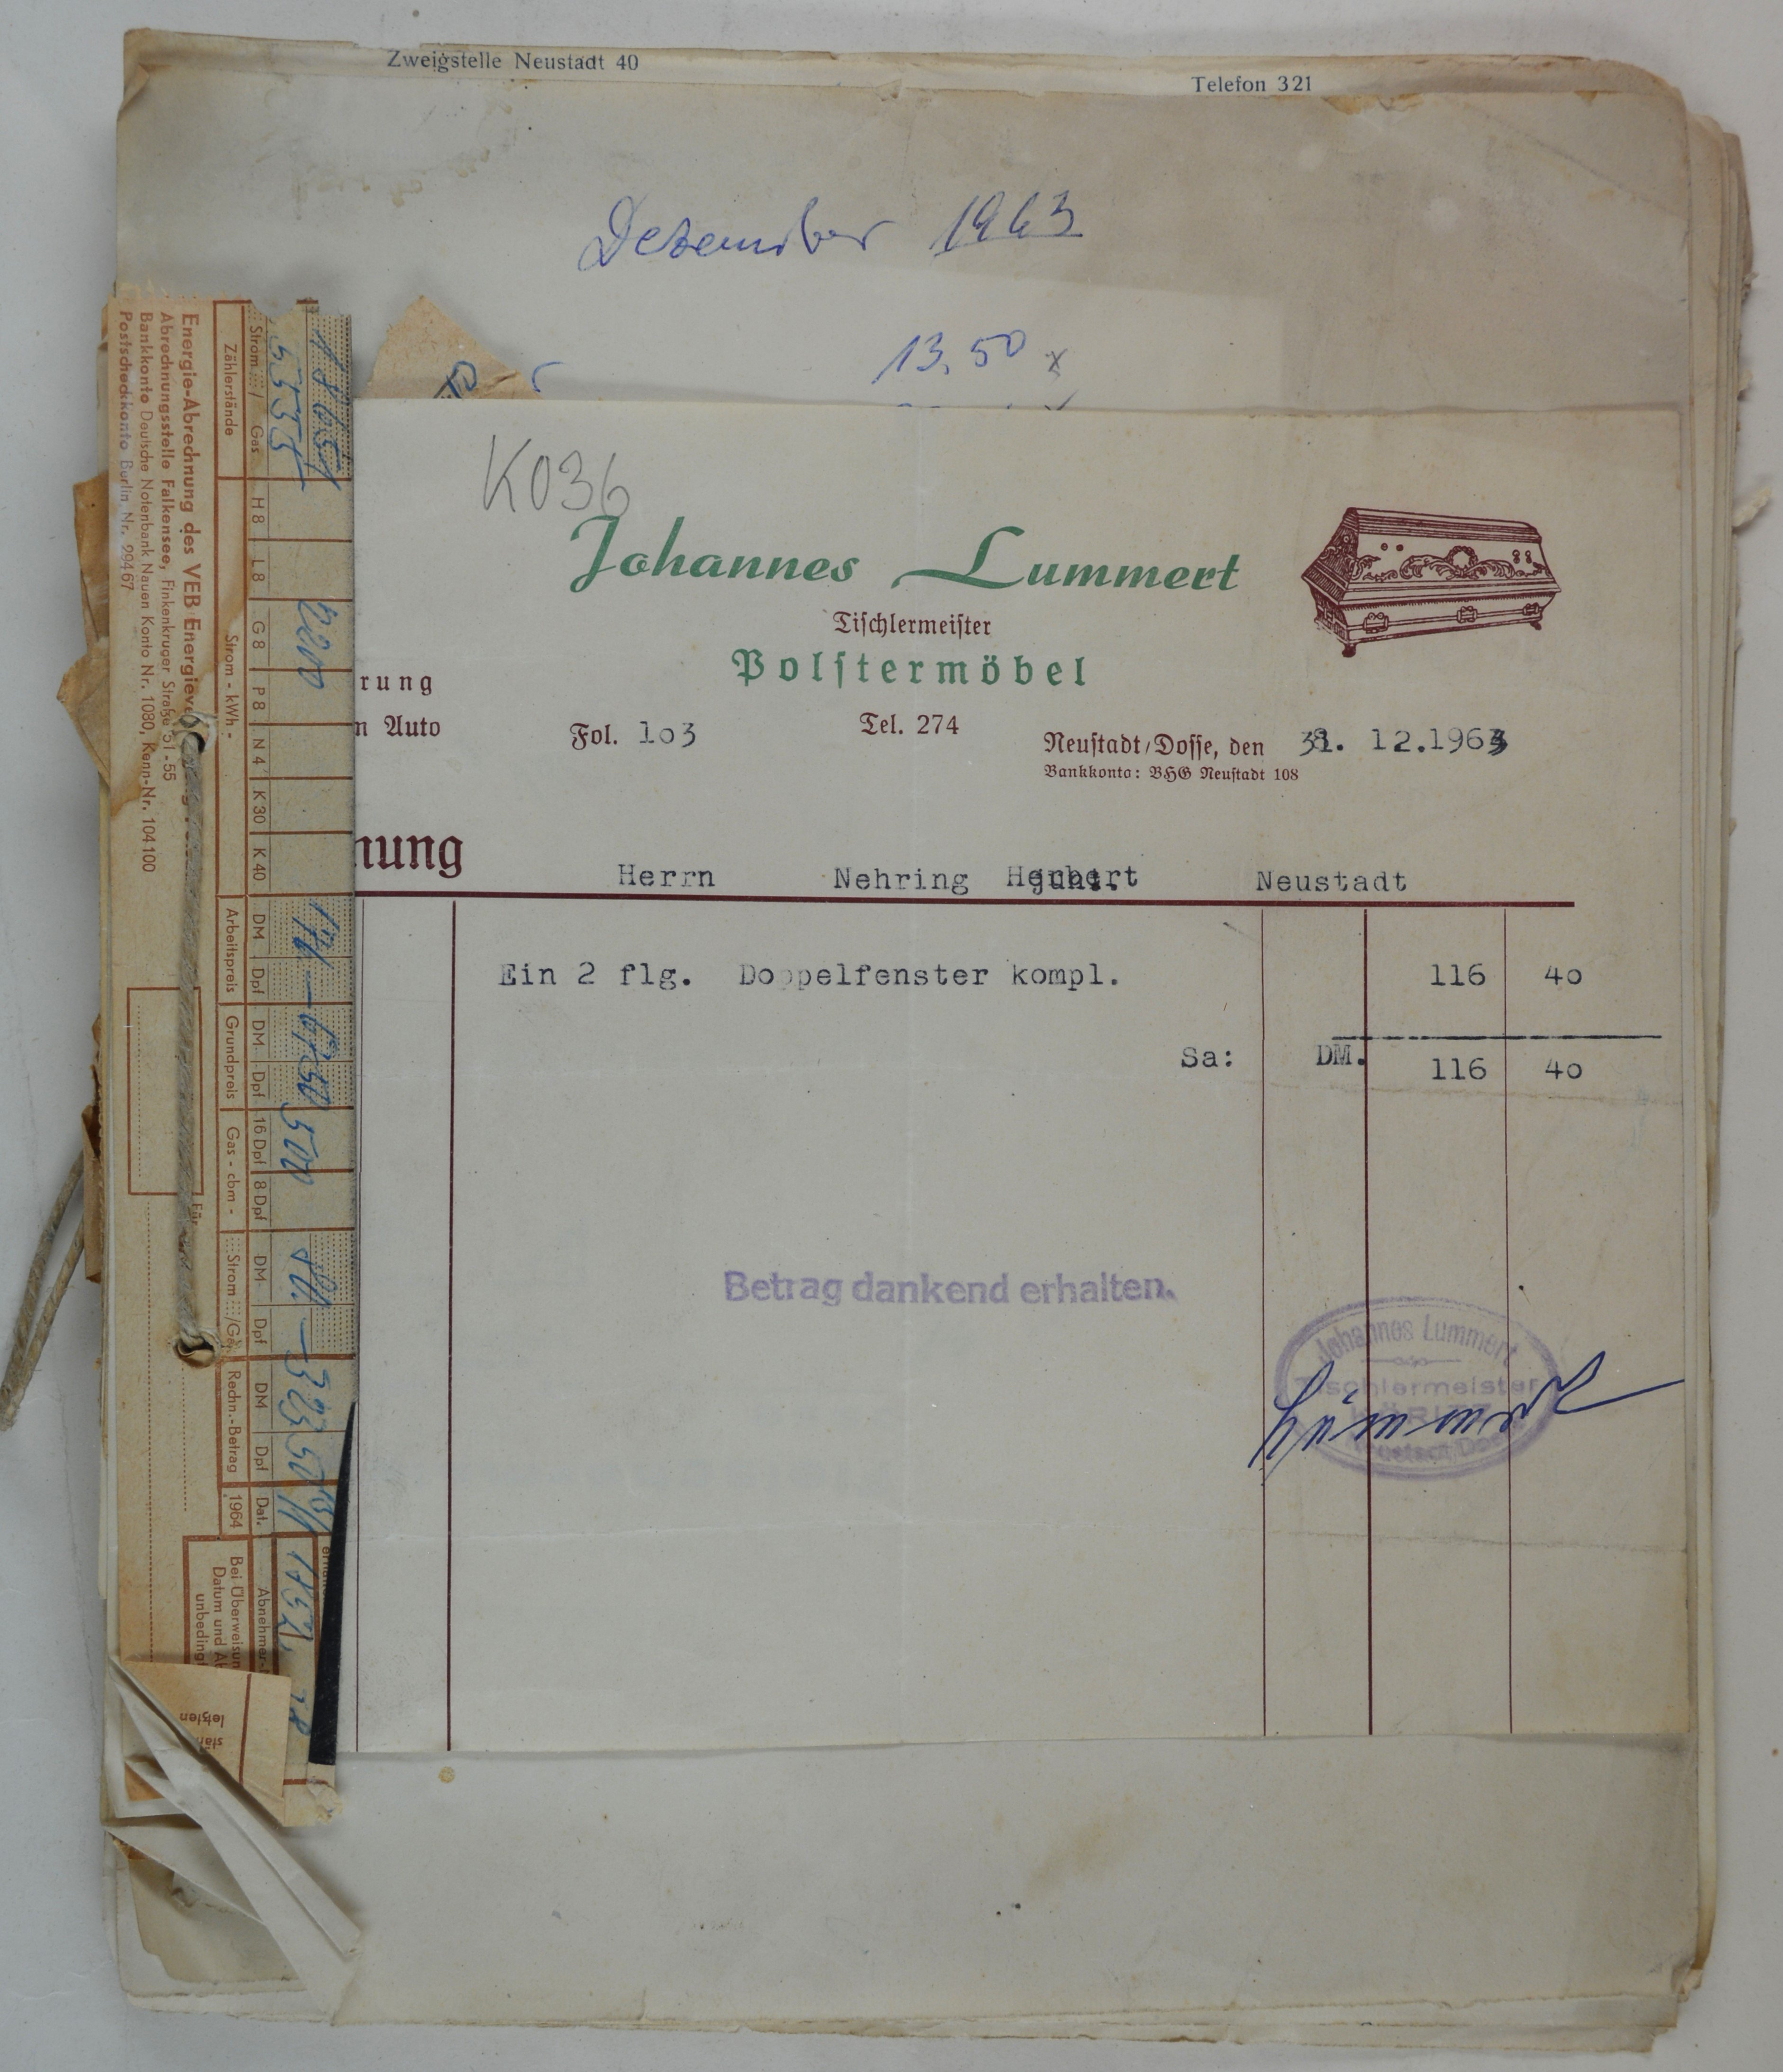 Rechnungen für die Handelsorganisation Nehring aus den Jahren 1963-1970 (DDR Geschichtsmuseum im Dokumentationszentrum Perleberg CC BY-SA)